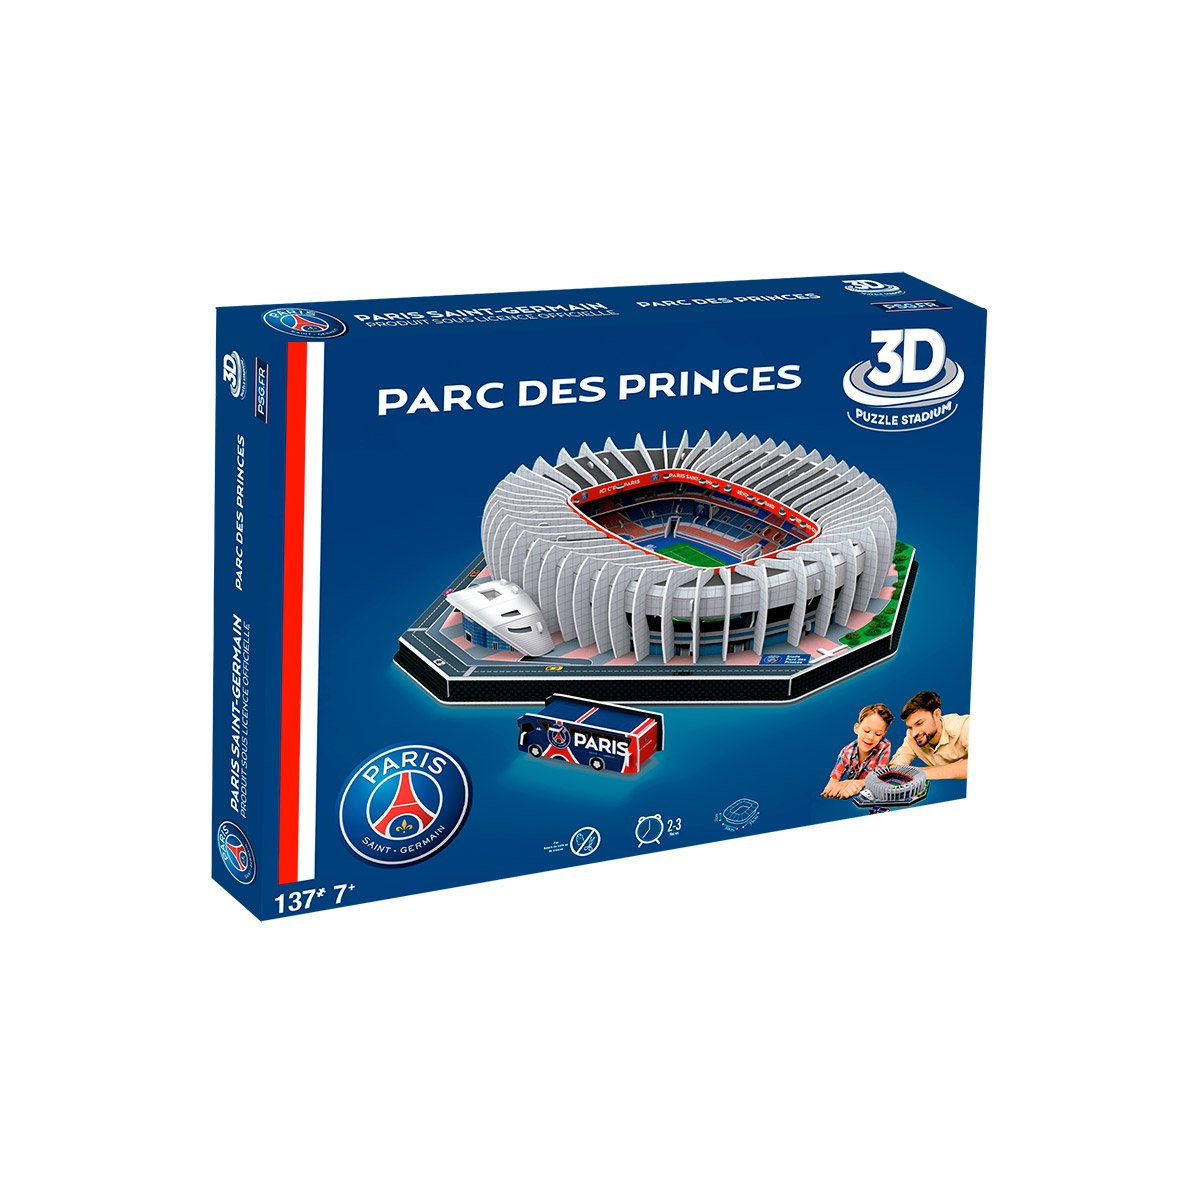 Puzzle Stade 3D Parc des Princes PSG - La Grande Récré